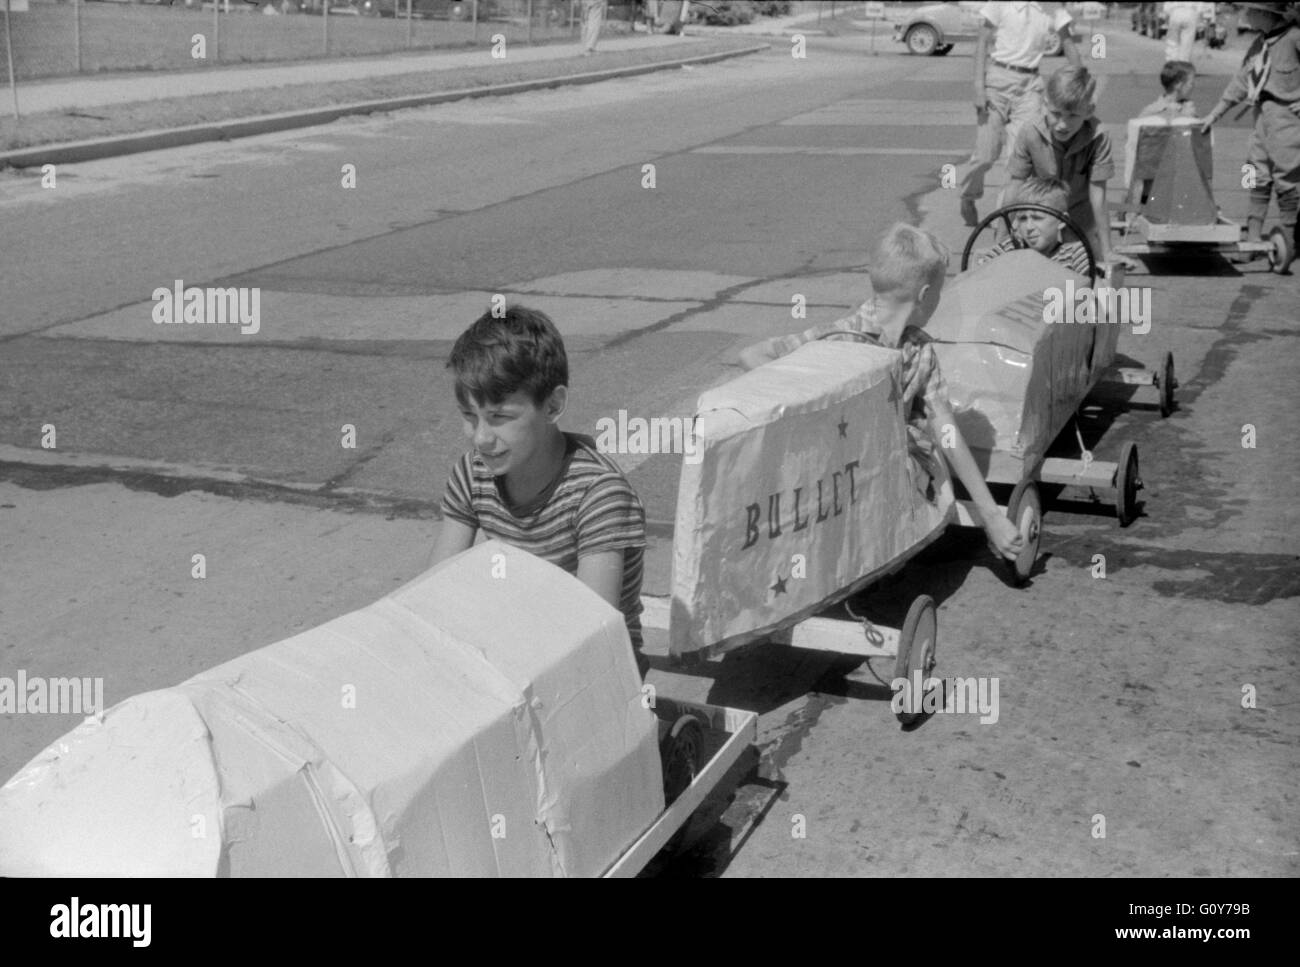 Entrants en course Auto Soapbox pendant juillet 4ème célébration, Salisbury, Maryland, USA, par Jack Delano pour Farm Security Administration, Juillet 1940 Banque D'Images